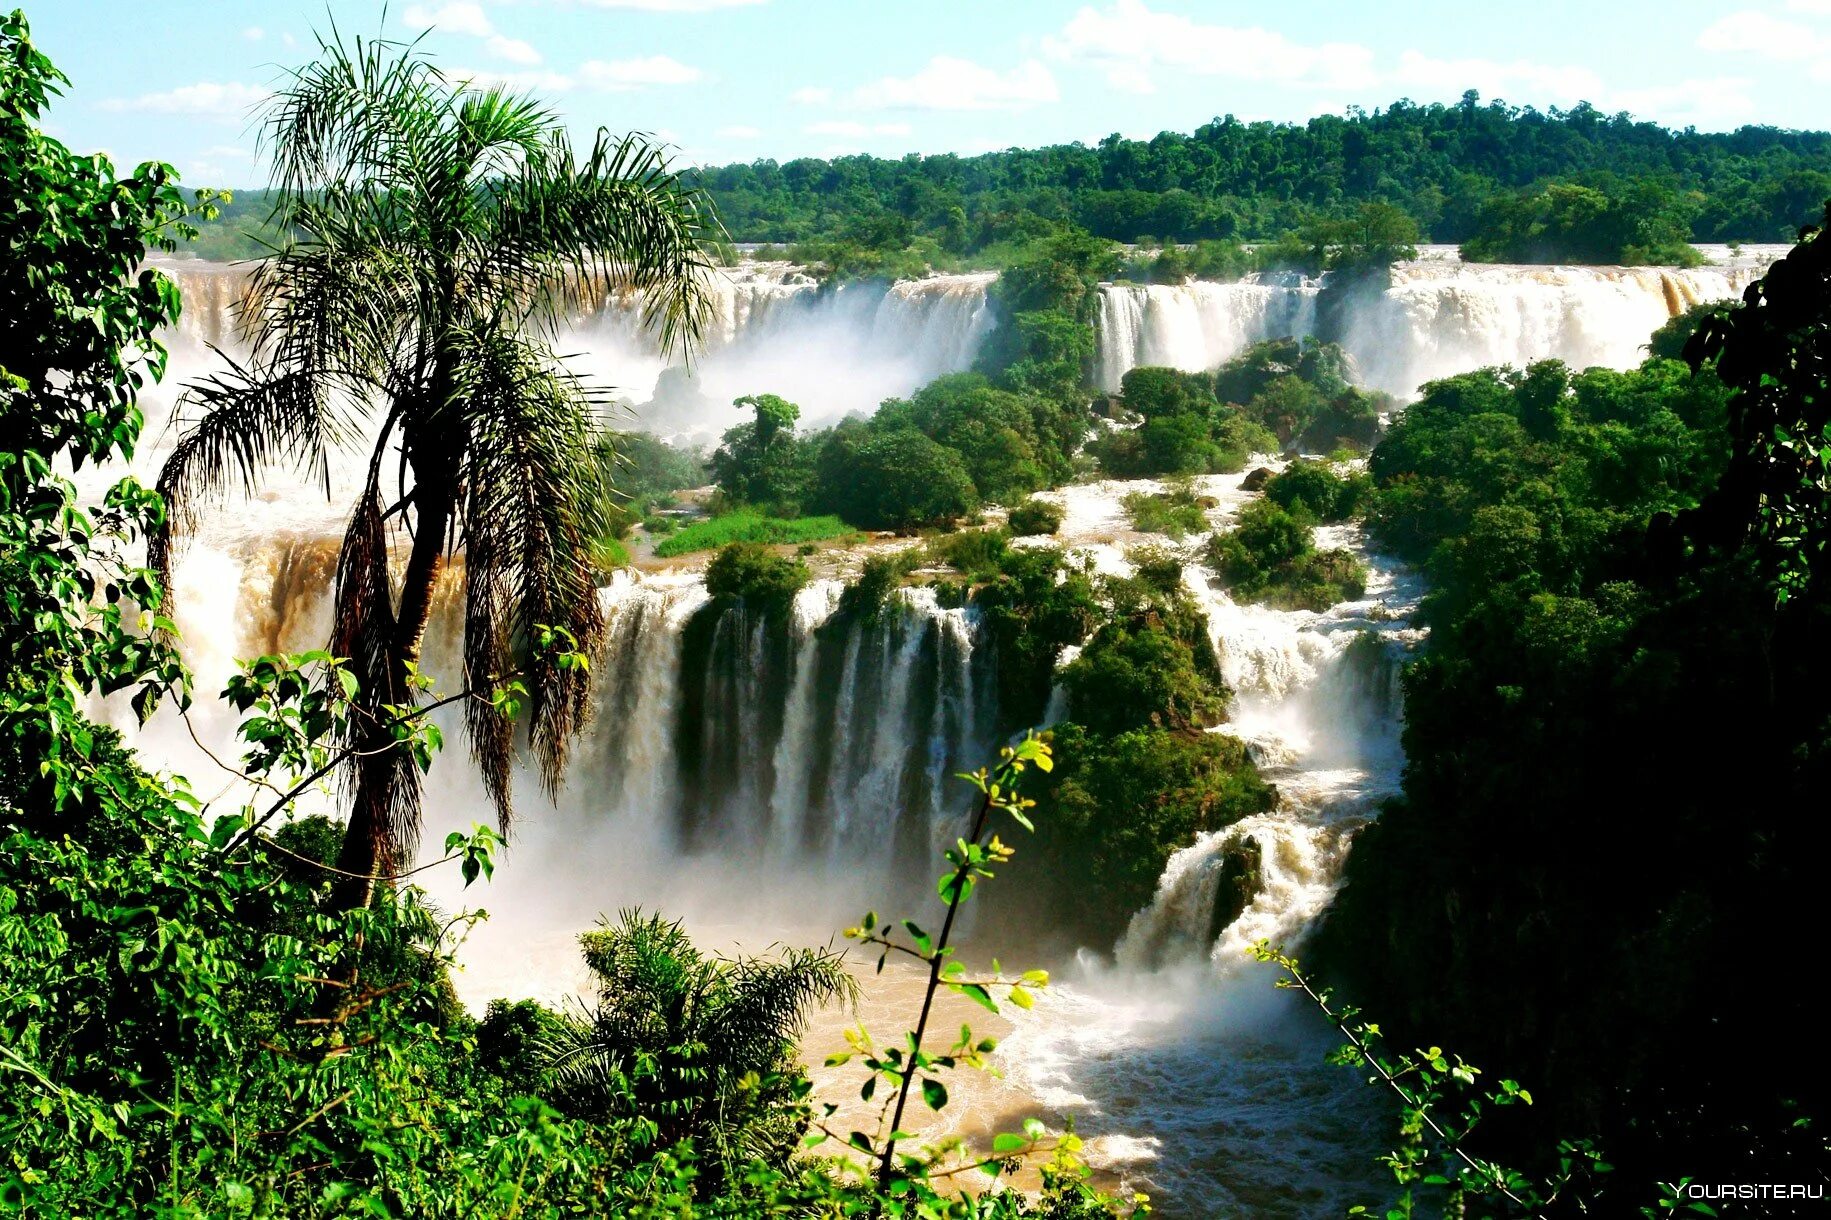 Игуасу это. Игуасу (национальный парк, Аргентина). Водопады Игуасу Аргентина Бразилия. Национальный парк Игуасу, Бразилия / Аргентина. Водопад Игуасу в Южной Америке.